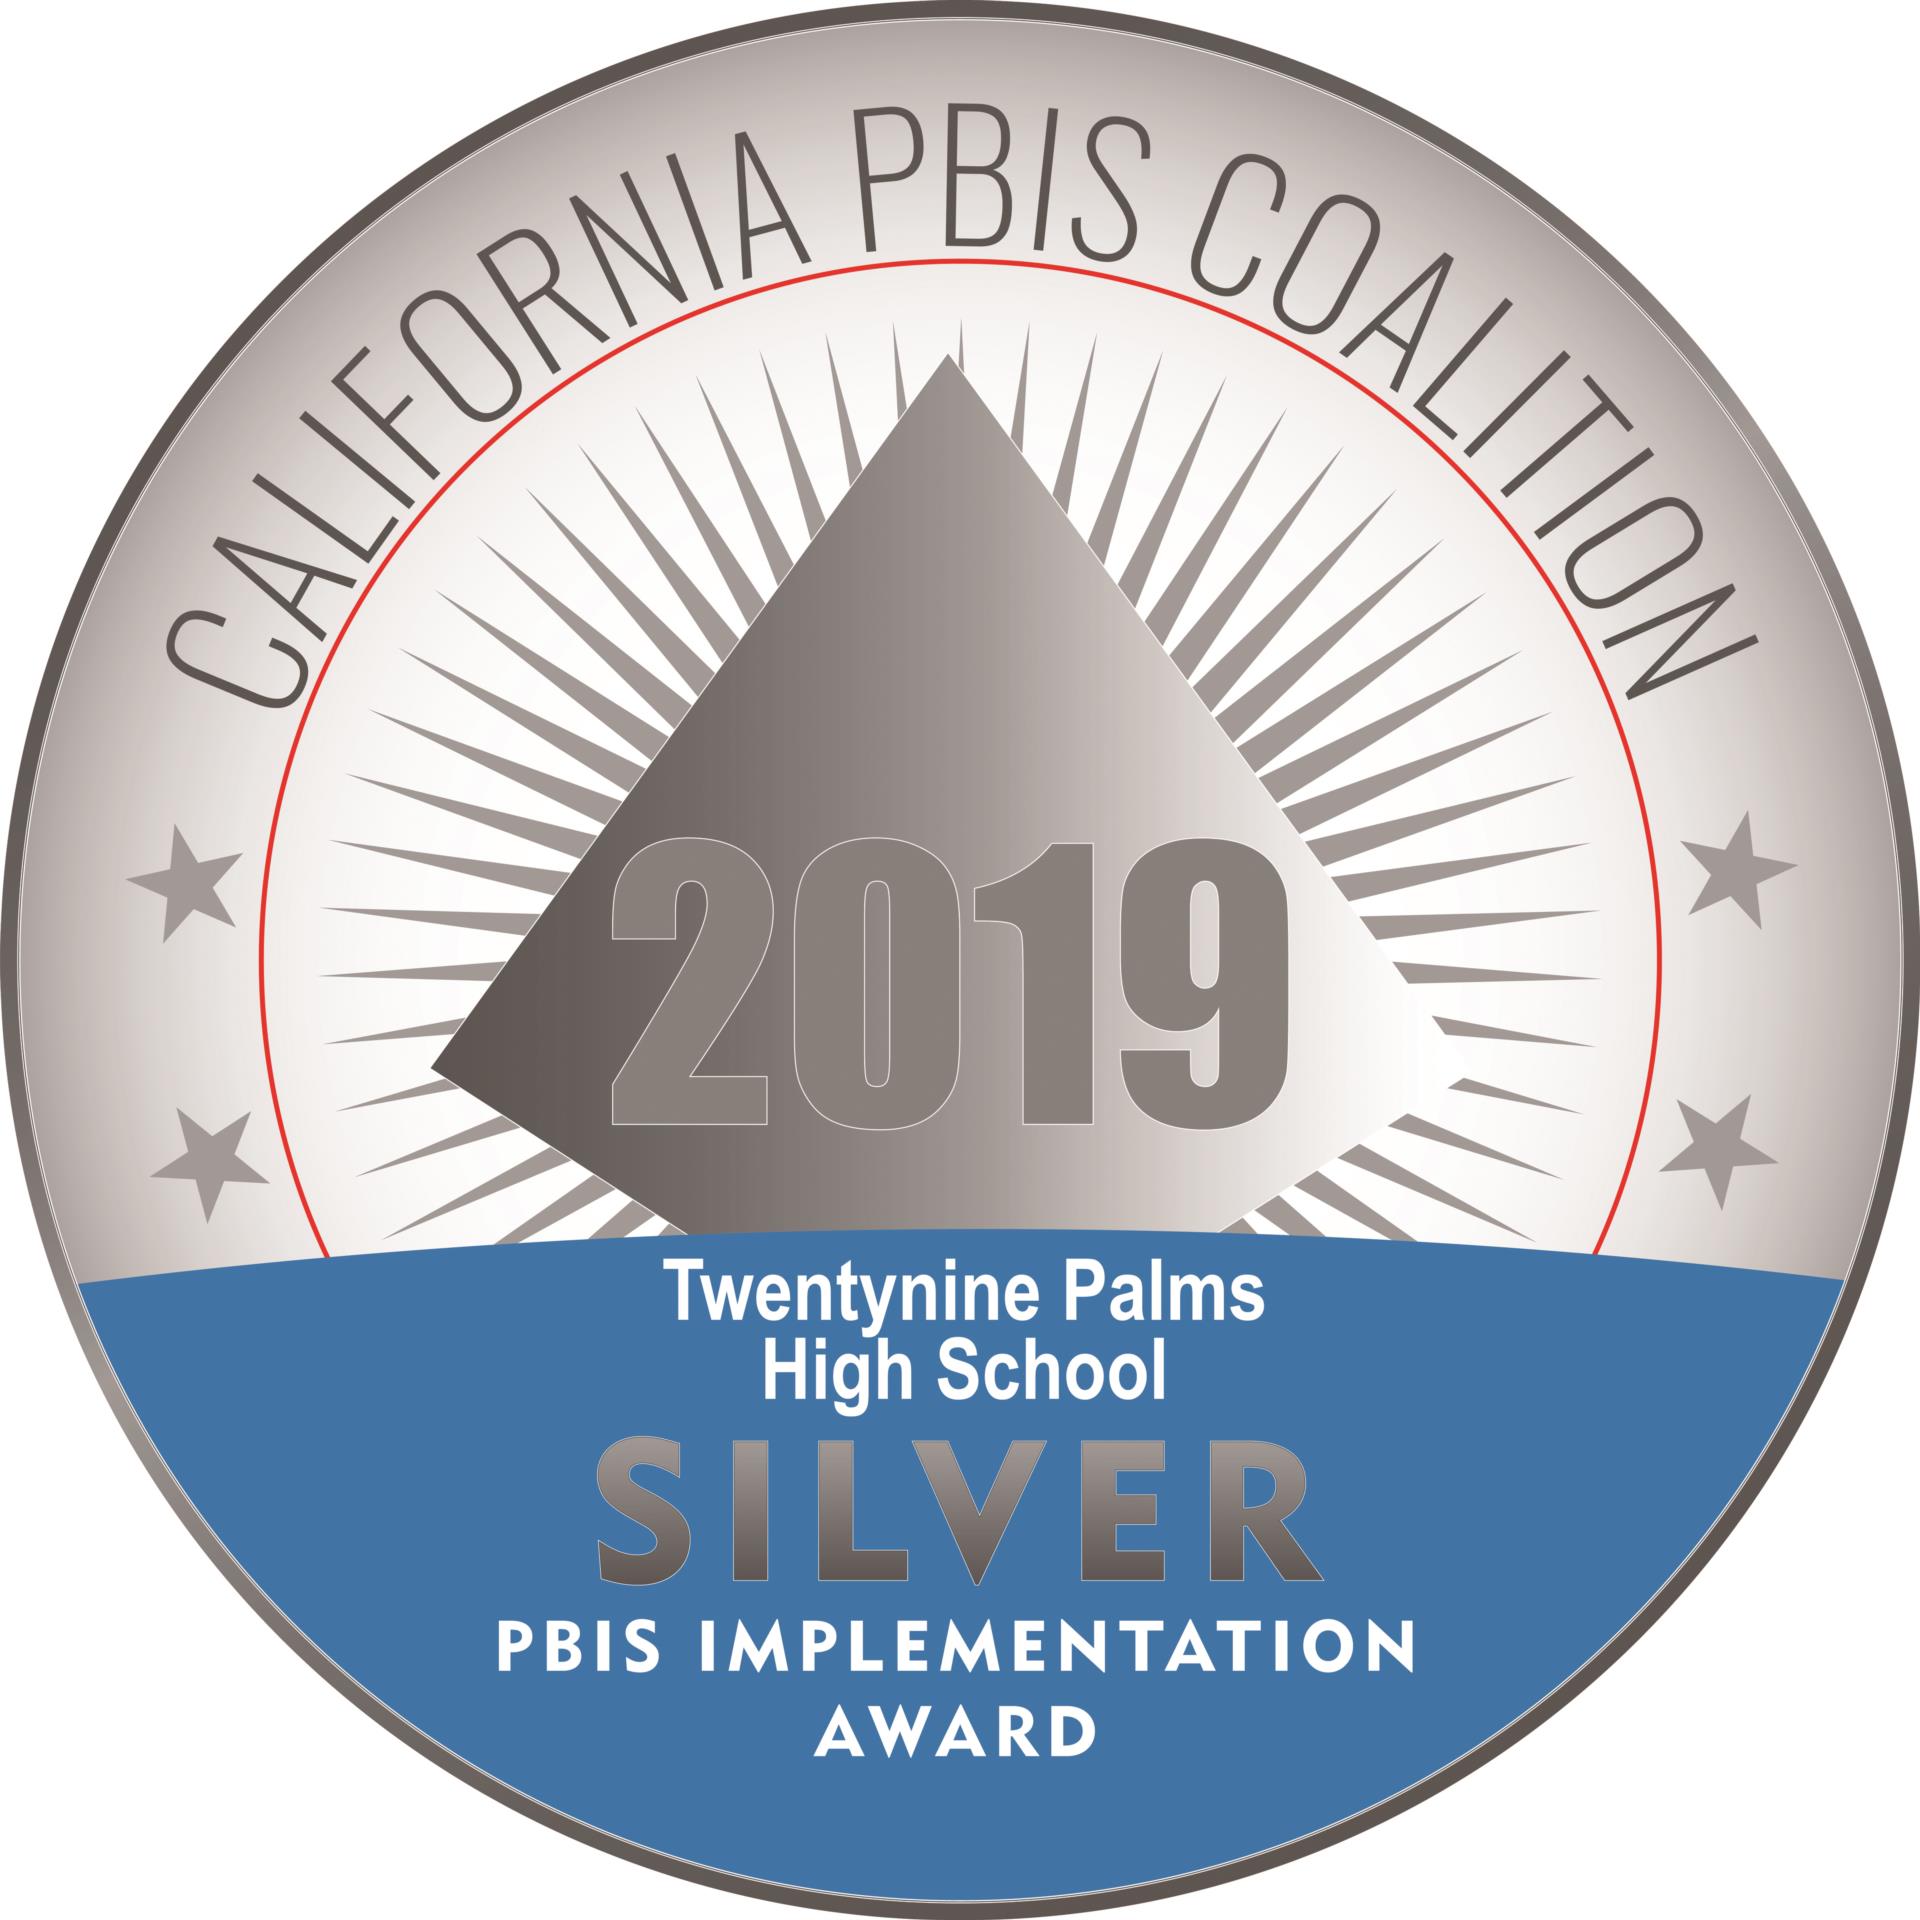 California PBIS Coalition